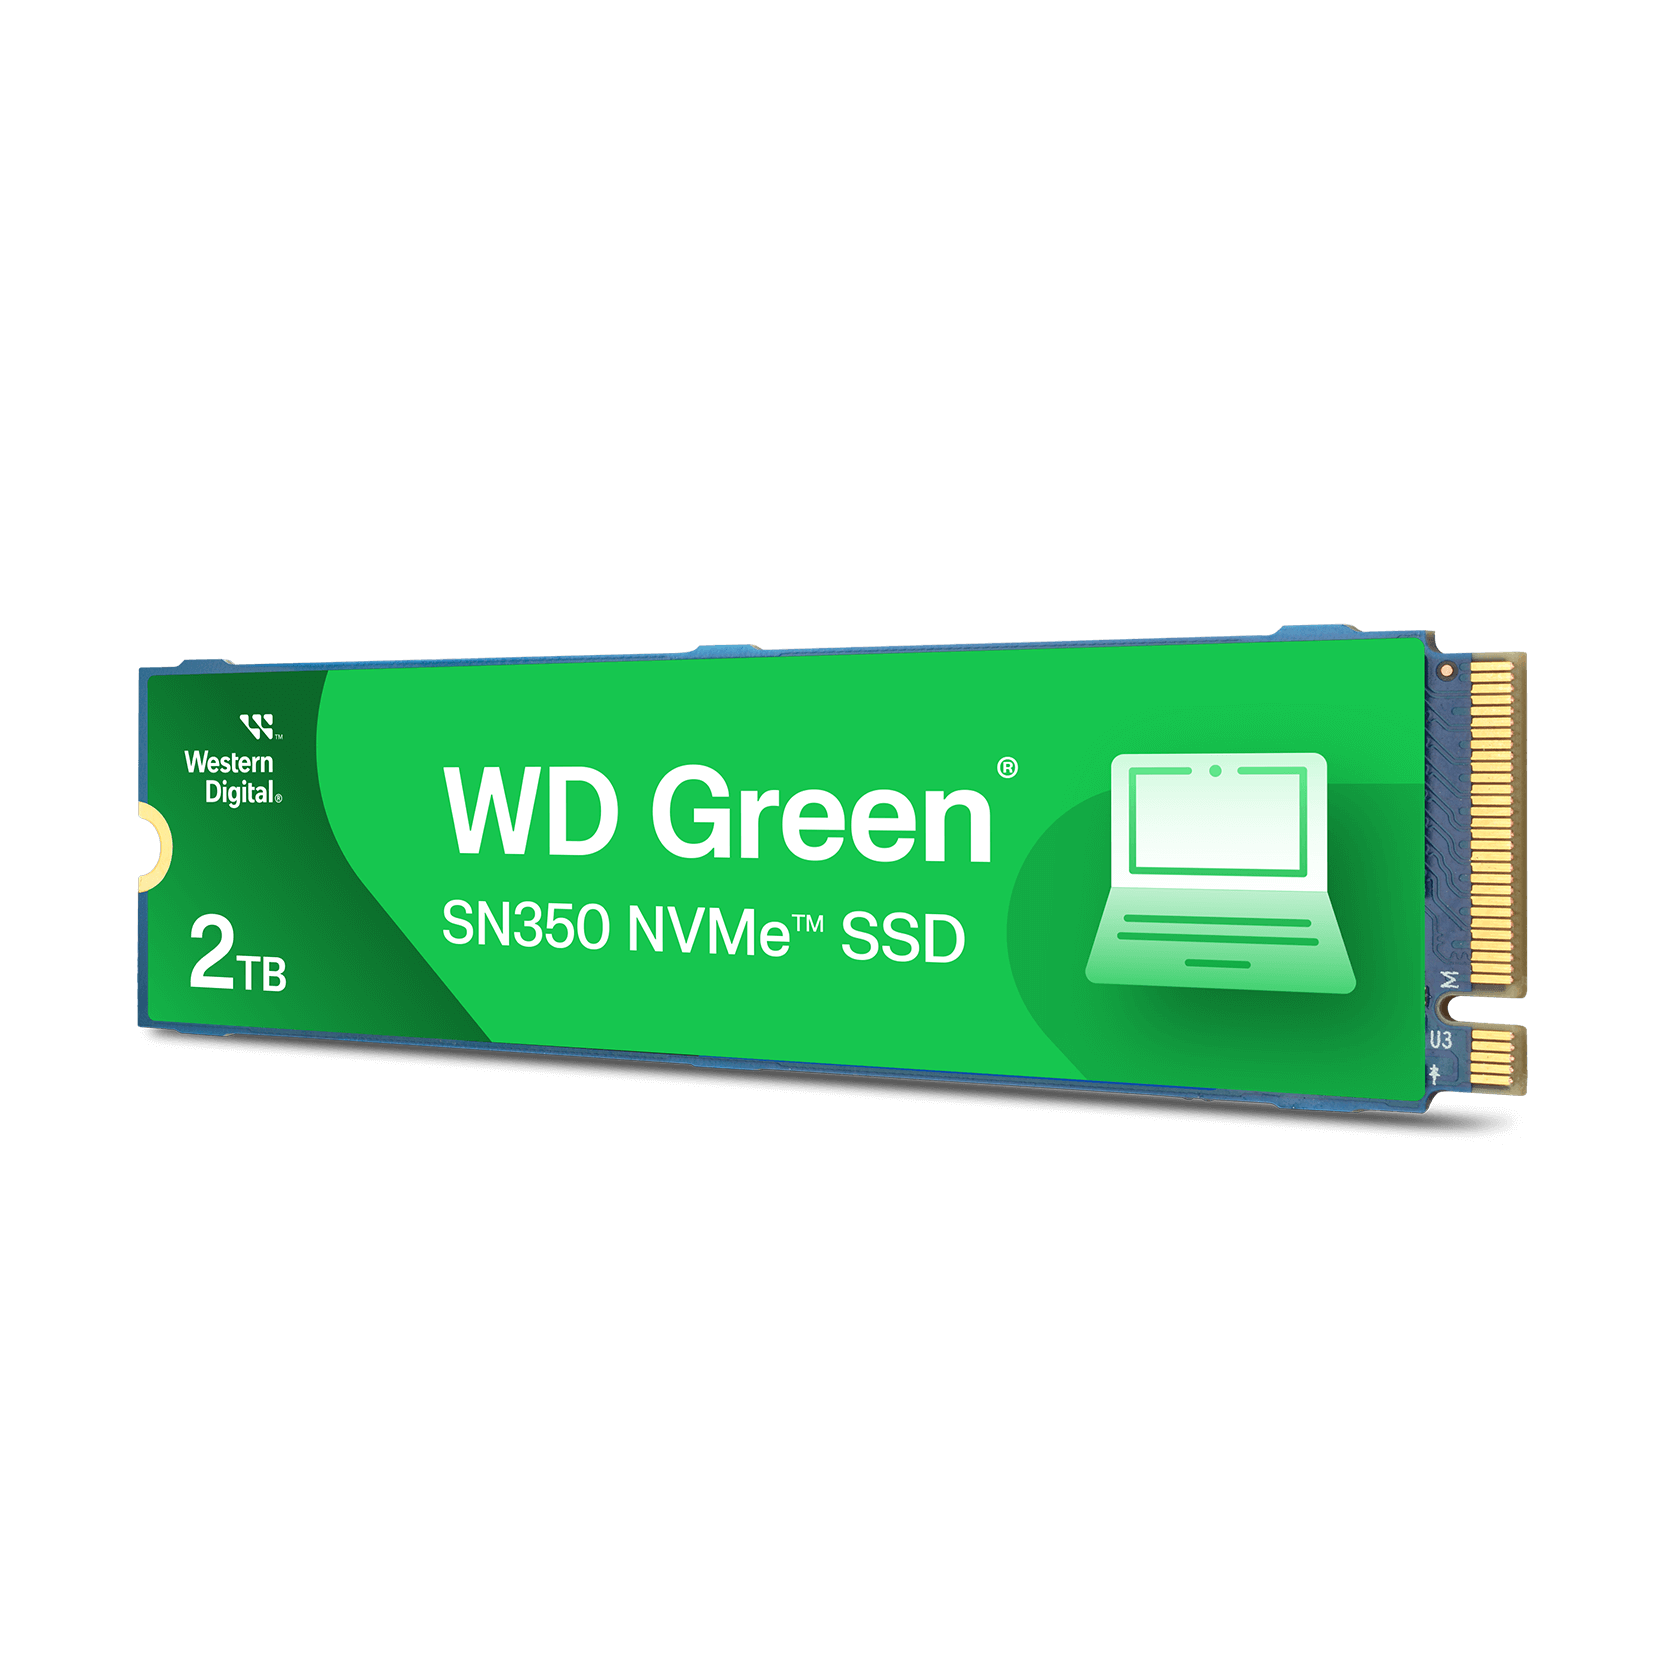 Western Digital 2TB WD Greenâ„¢ SN350 NVMeâ„¢ - Solid State Drive - WDS200T3G0C